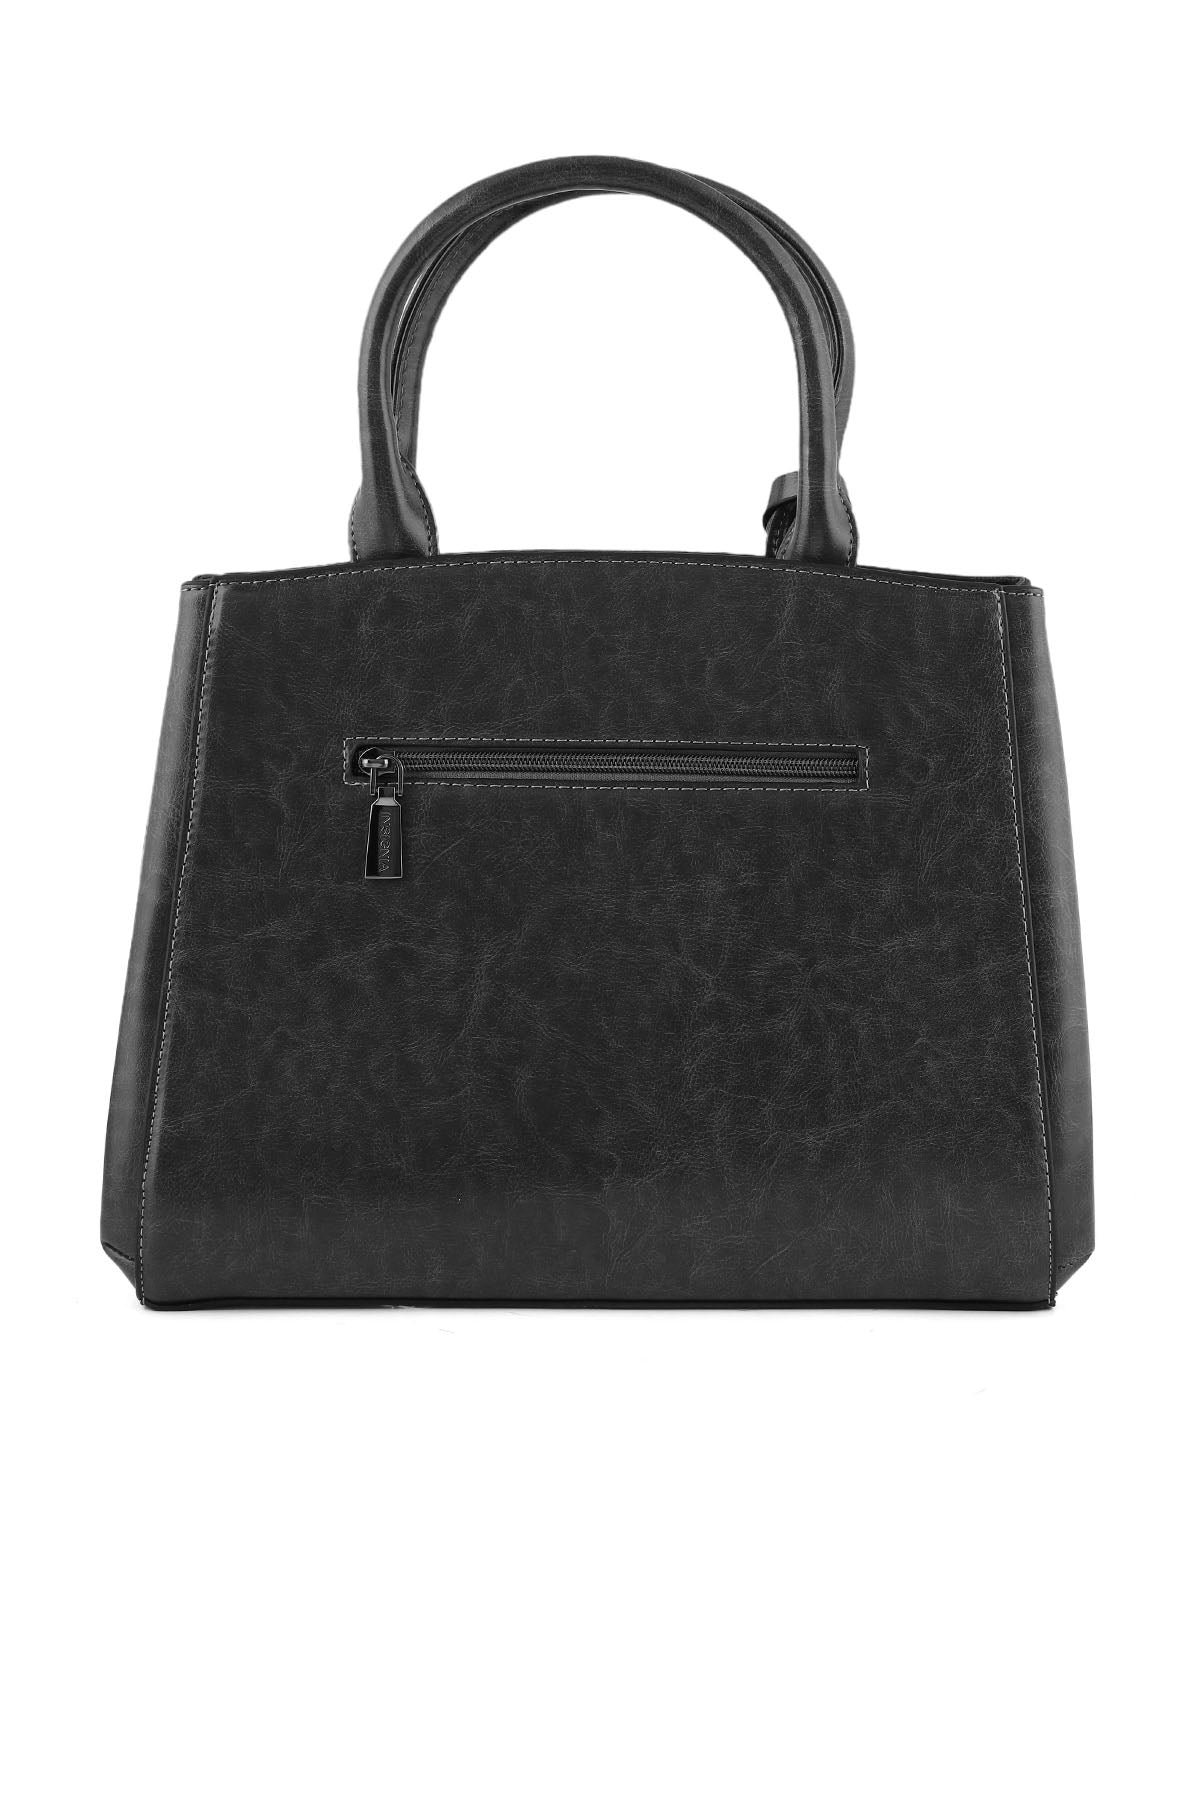 Formal Tote Hand Bags B14966-Grey